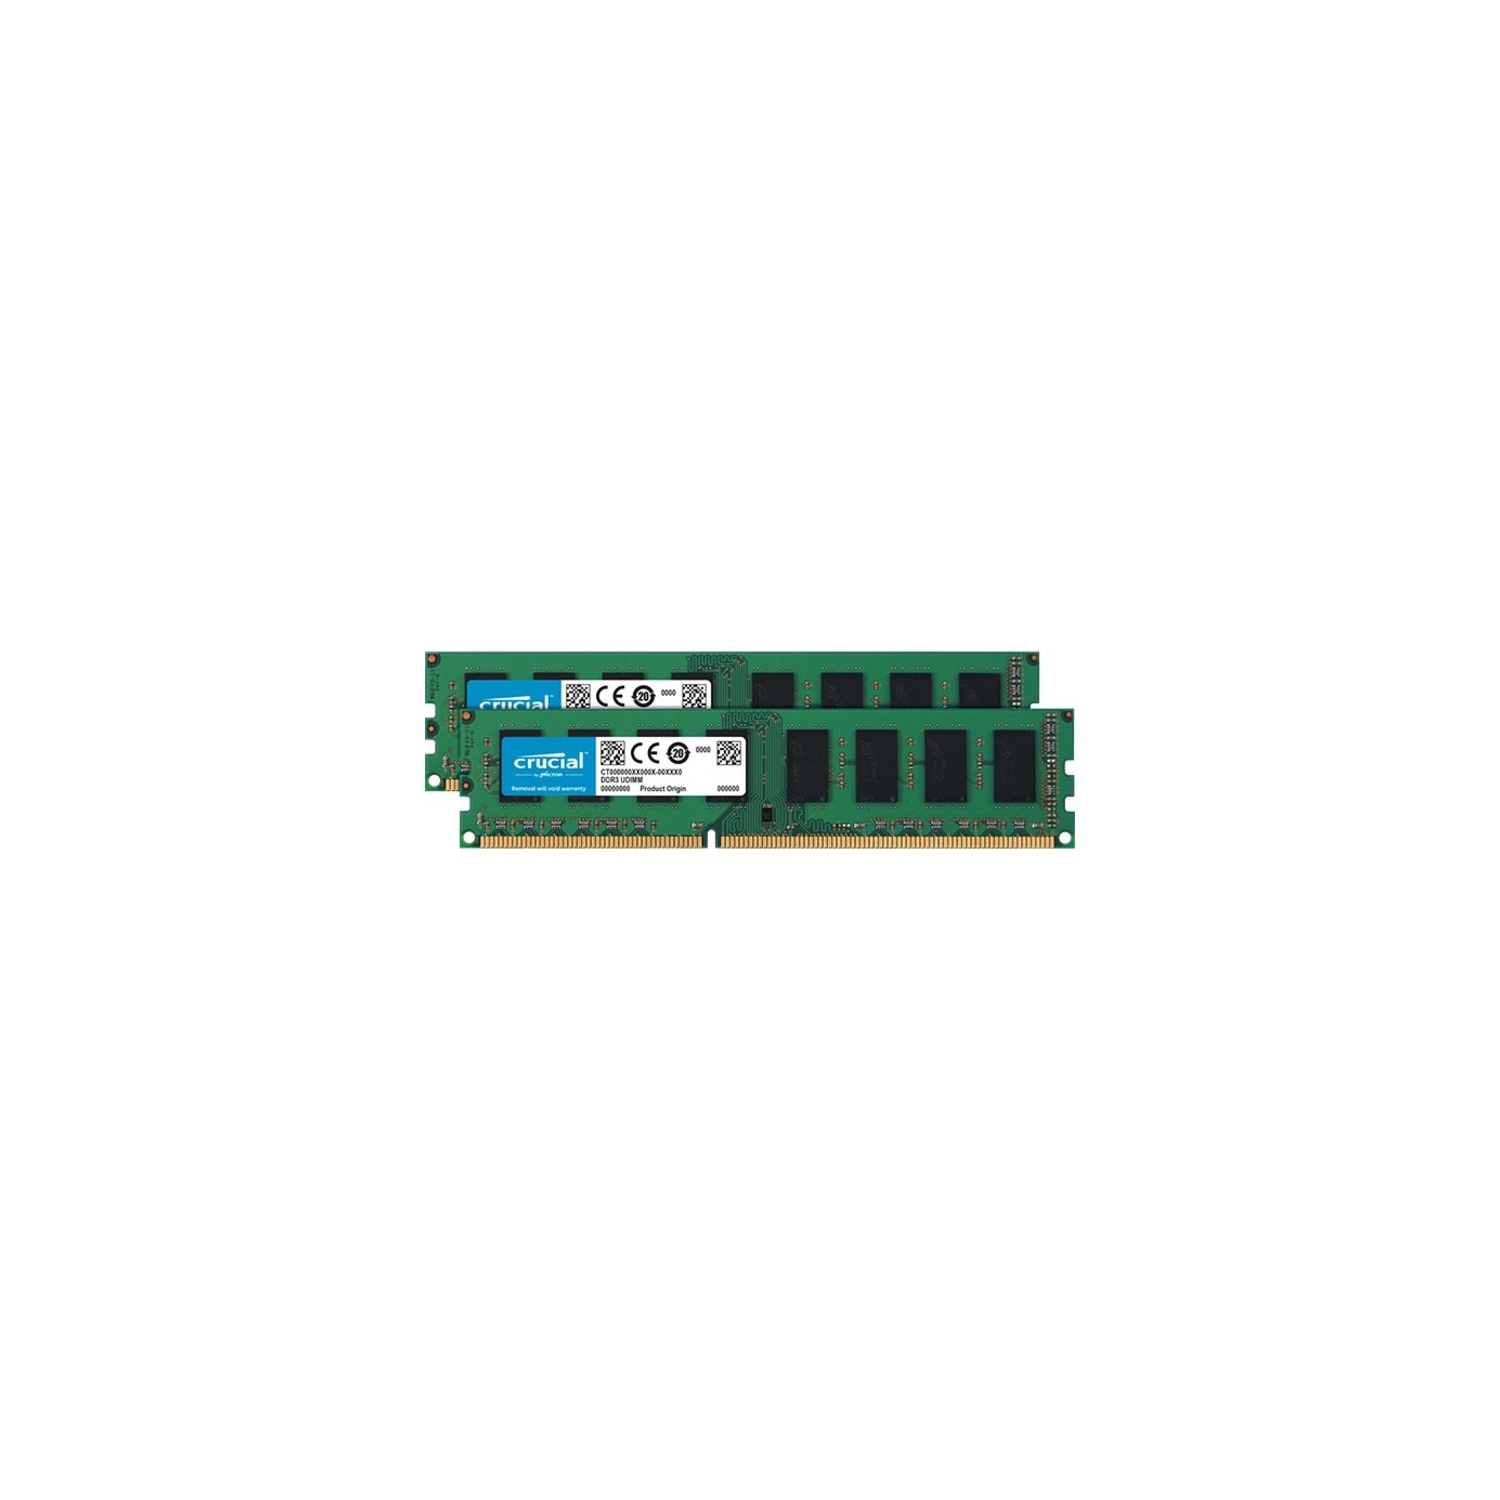 CRUCIAL 16GB (2 X 8GB) 240-PIN DDR3 SDRAM DDR3L 1600 (PC3L 12800) DESKTOP MEMORY MODEL CT2K102464BD160B